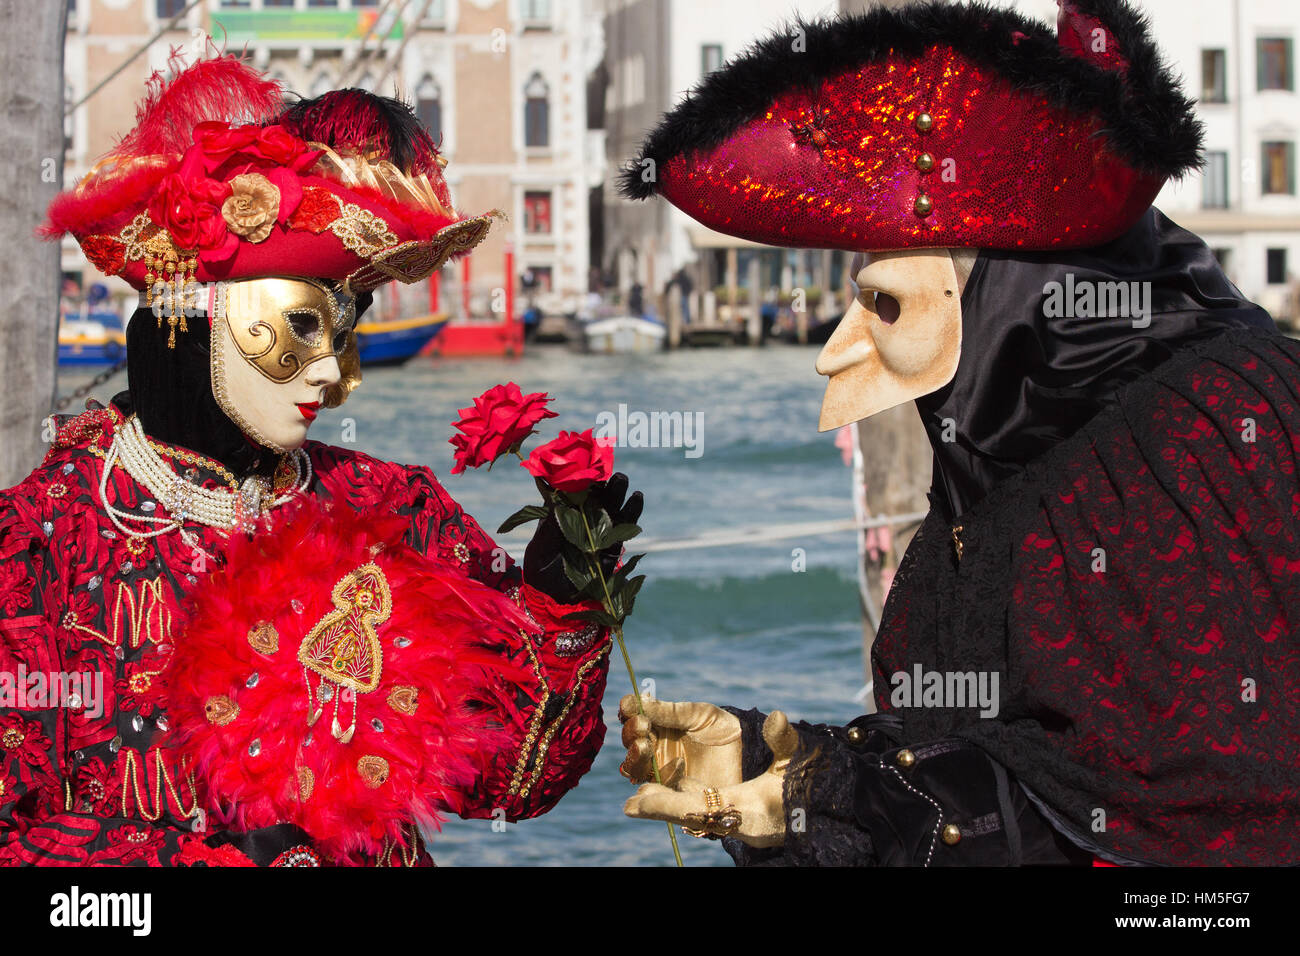 Venise - 7 Février : Carnaval de Venise au cours de leurs costumes le 7 février 2013 à Venise, Italie. Cette année, le carnaval a eu lieu entre le 26 janvier - Banque D'Images